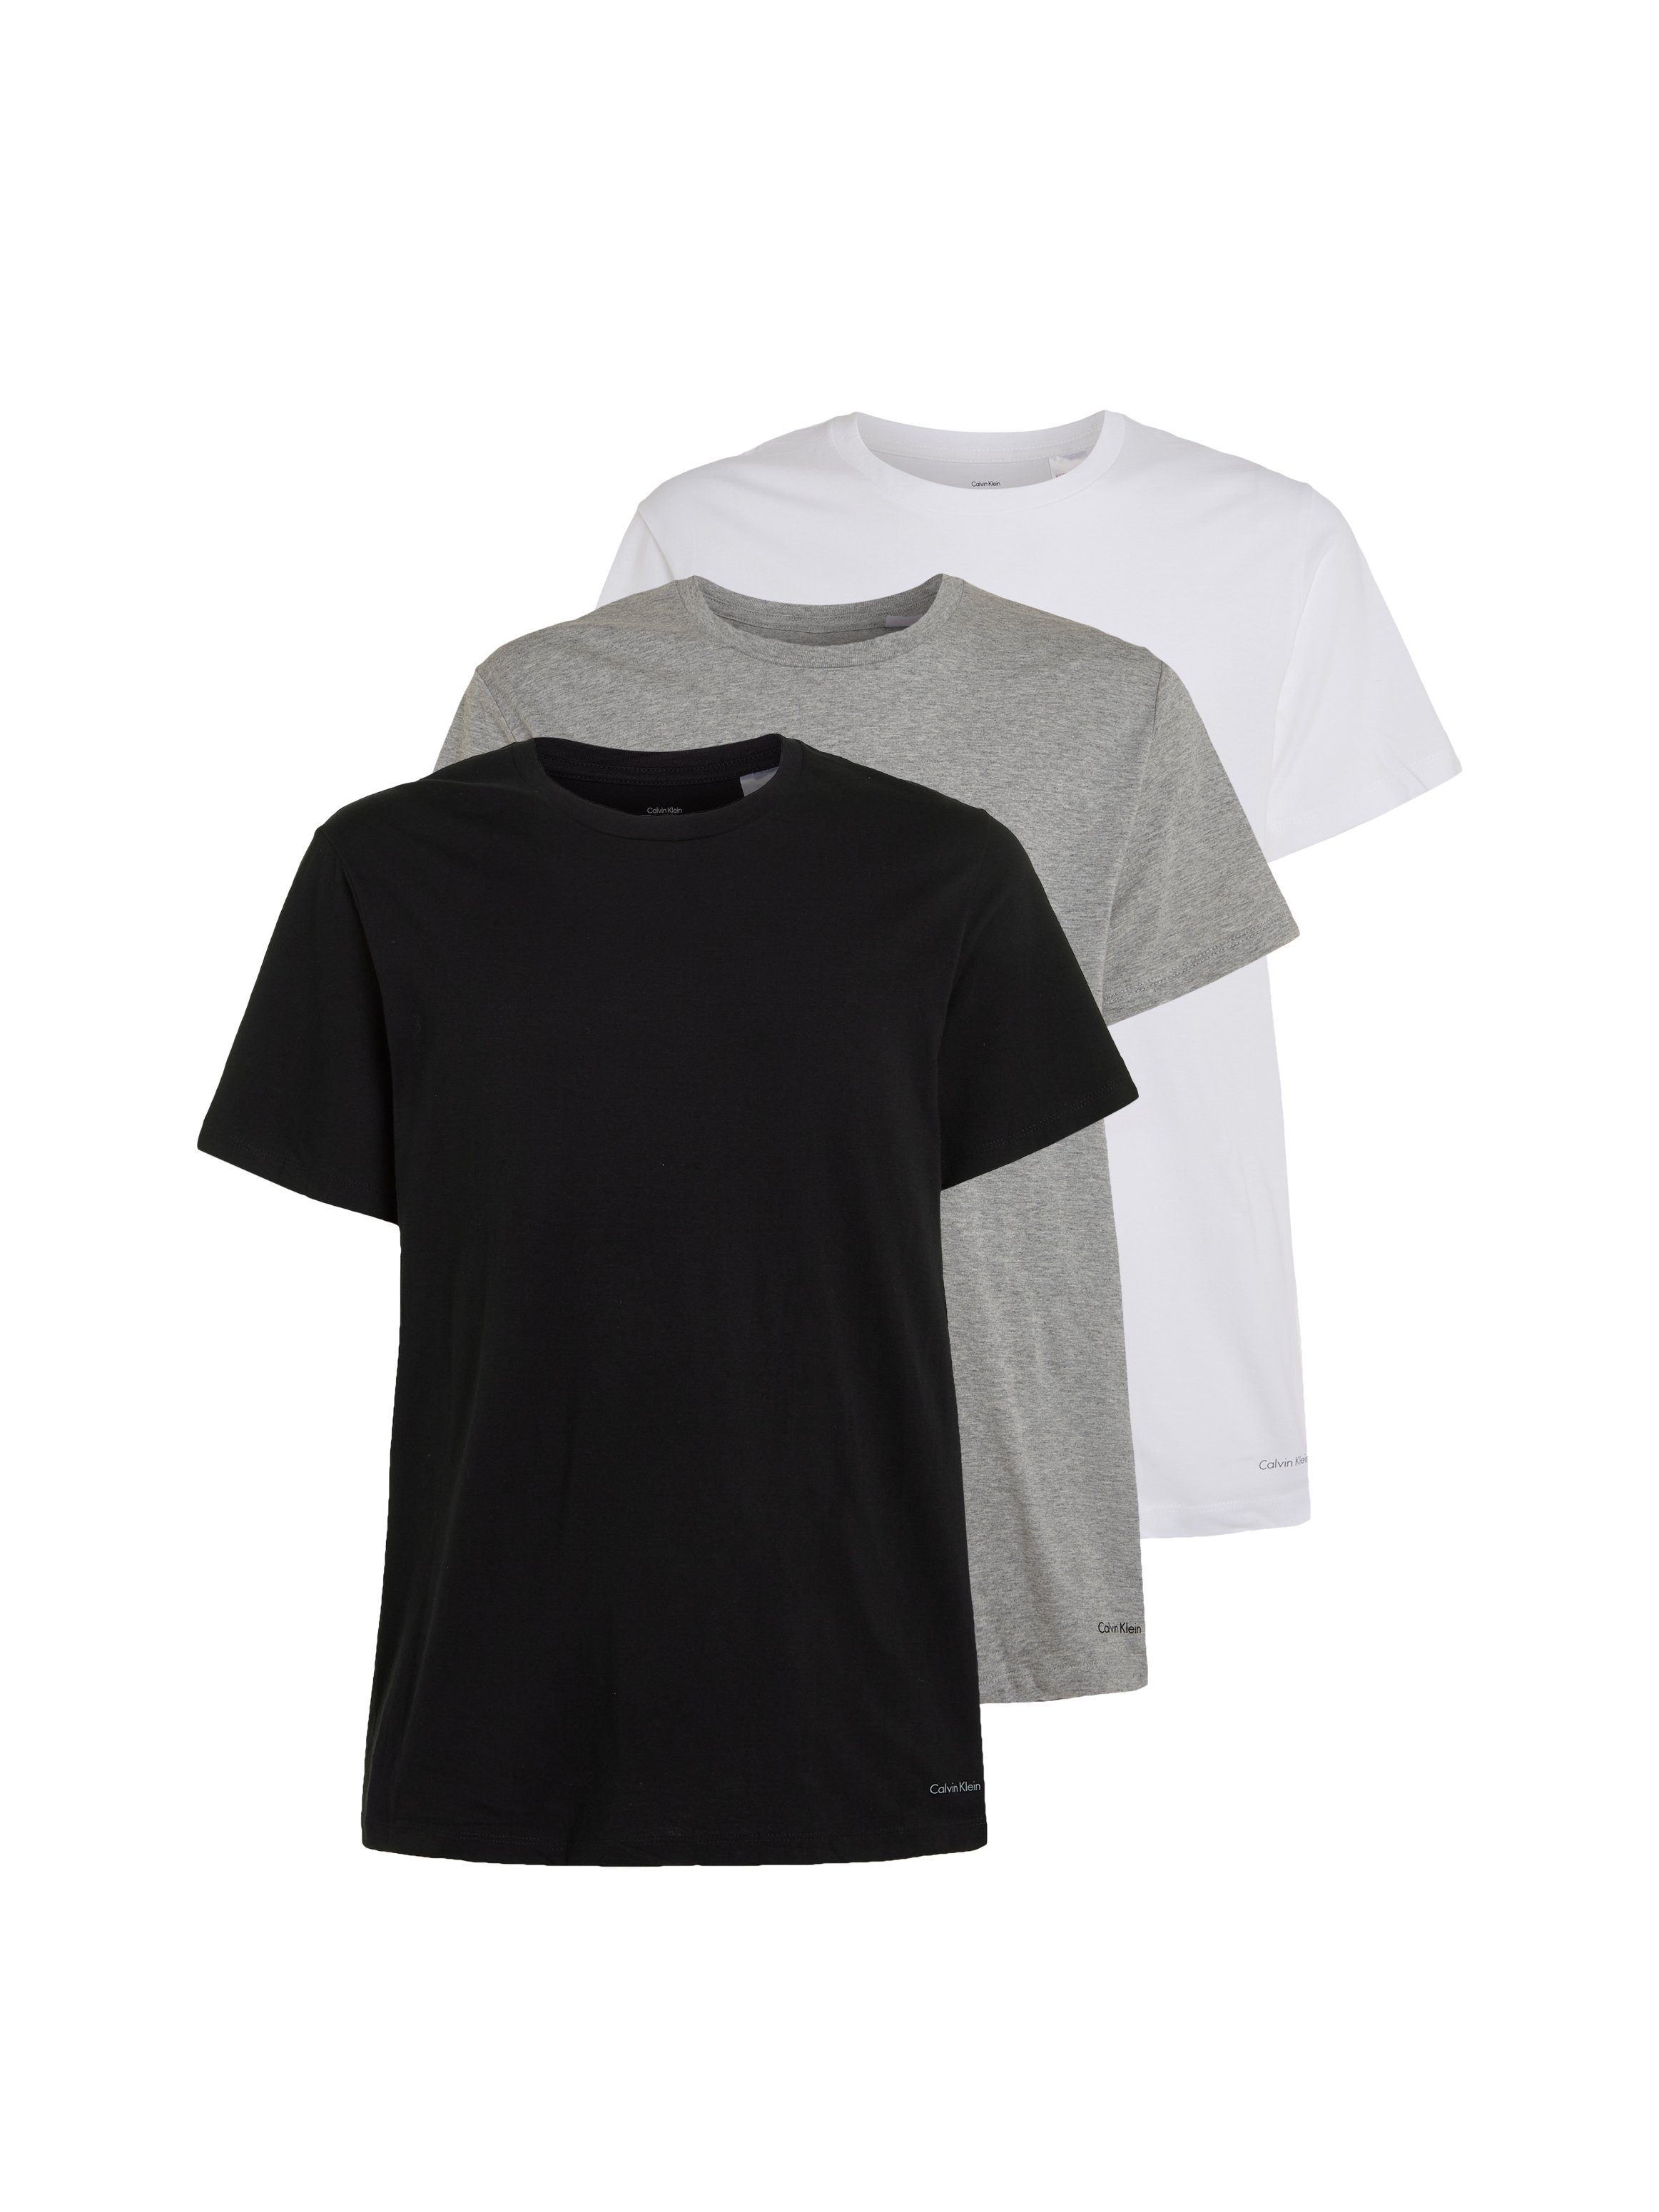 grau-meliert, schwarz, uni T-Shirt Klein weiß (3er-Pack) Calvin Underwear